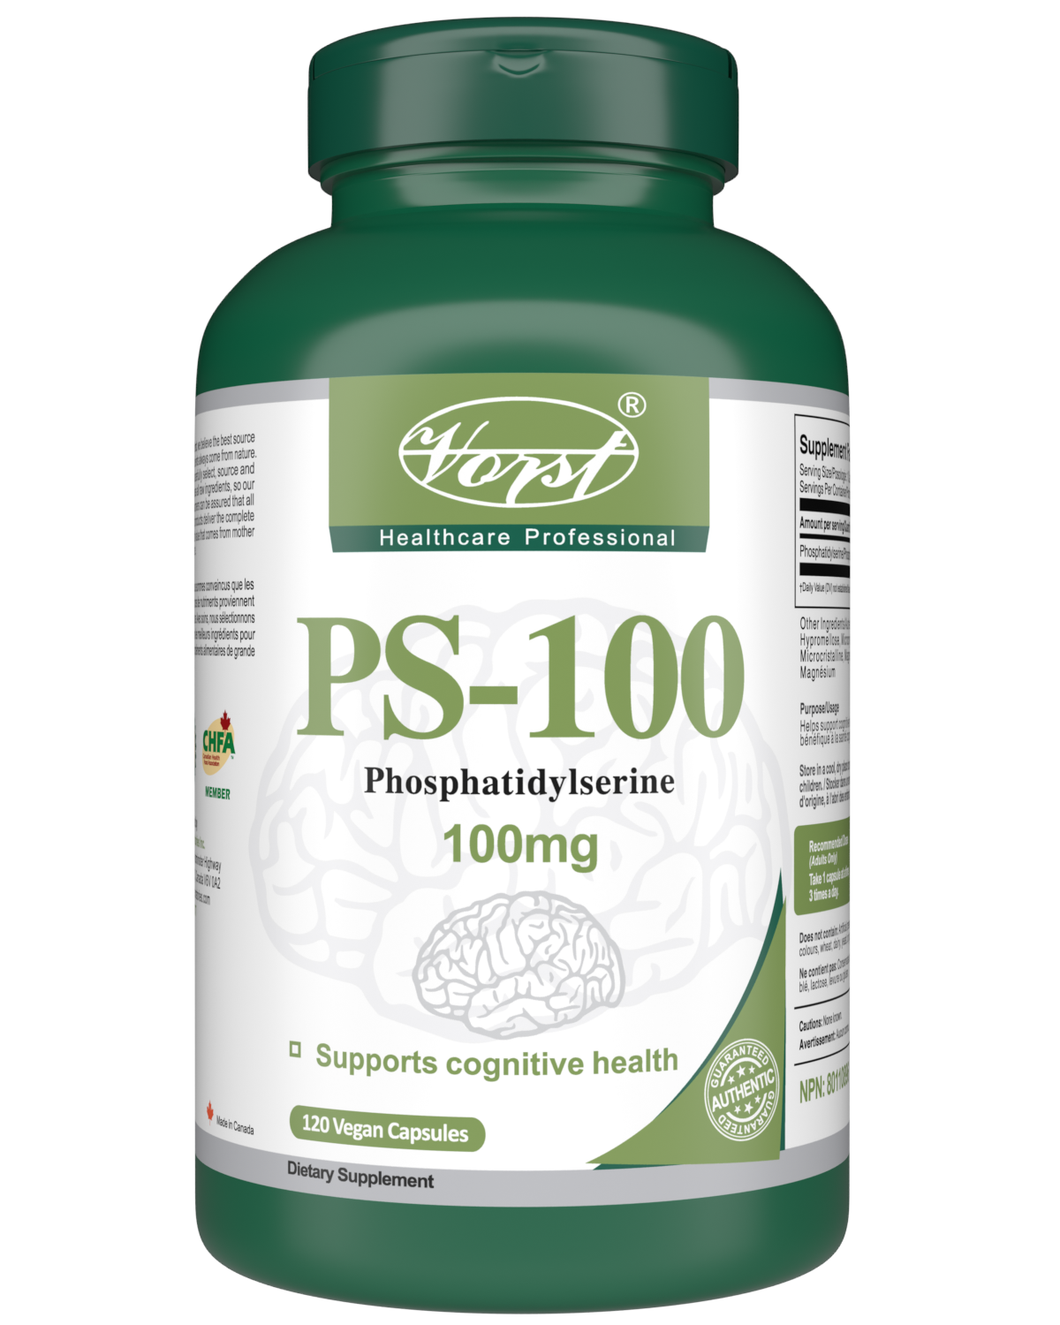 Phosphatidylserine 100mg Vegan Capsules (PS-100)